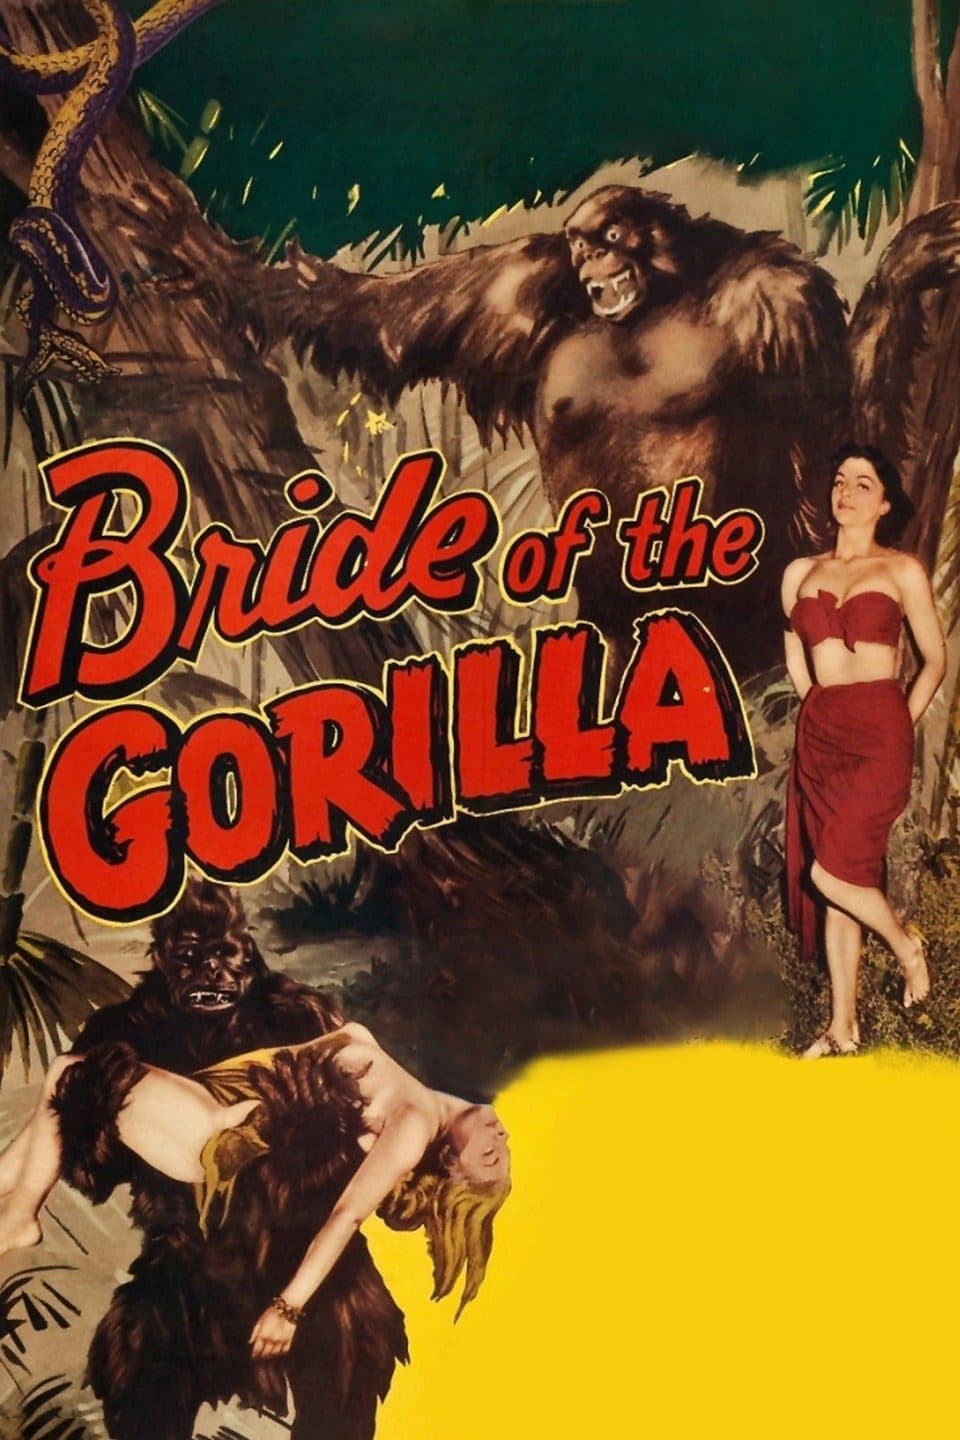 La novia del gorila